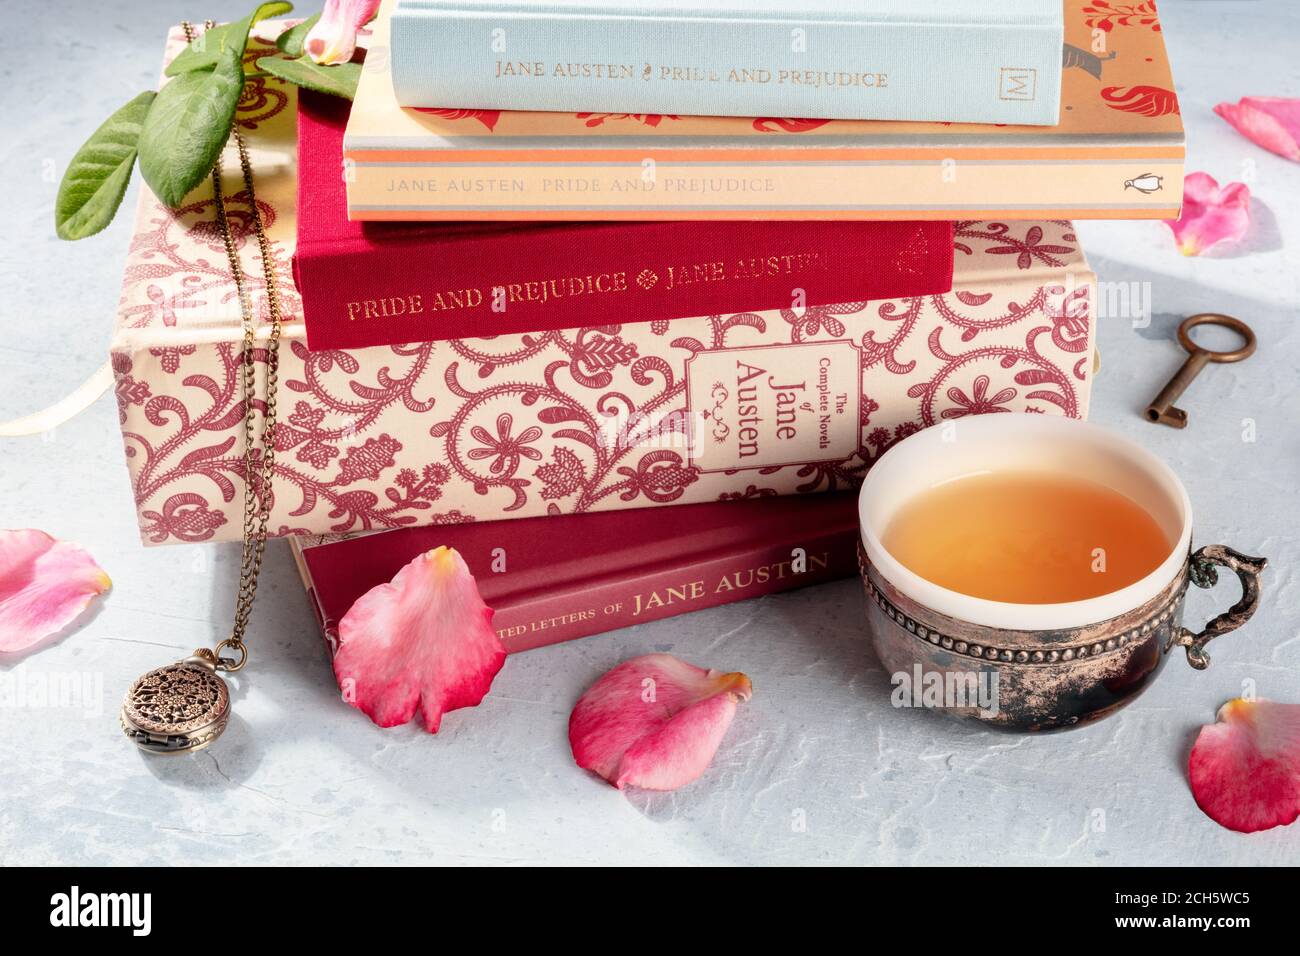 Madrid, Espagne - 2 septembre 2020: Livres de Jane Austen et sur elle dans une pile, avec une tasse de thé et quelques objets vintage, illustratif éditorial Banque D'Images